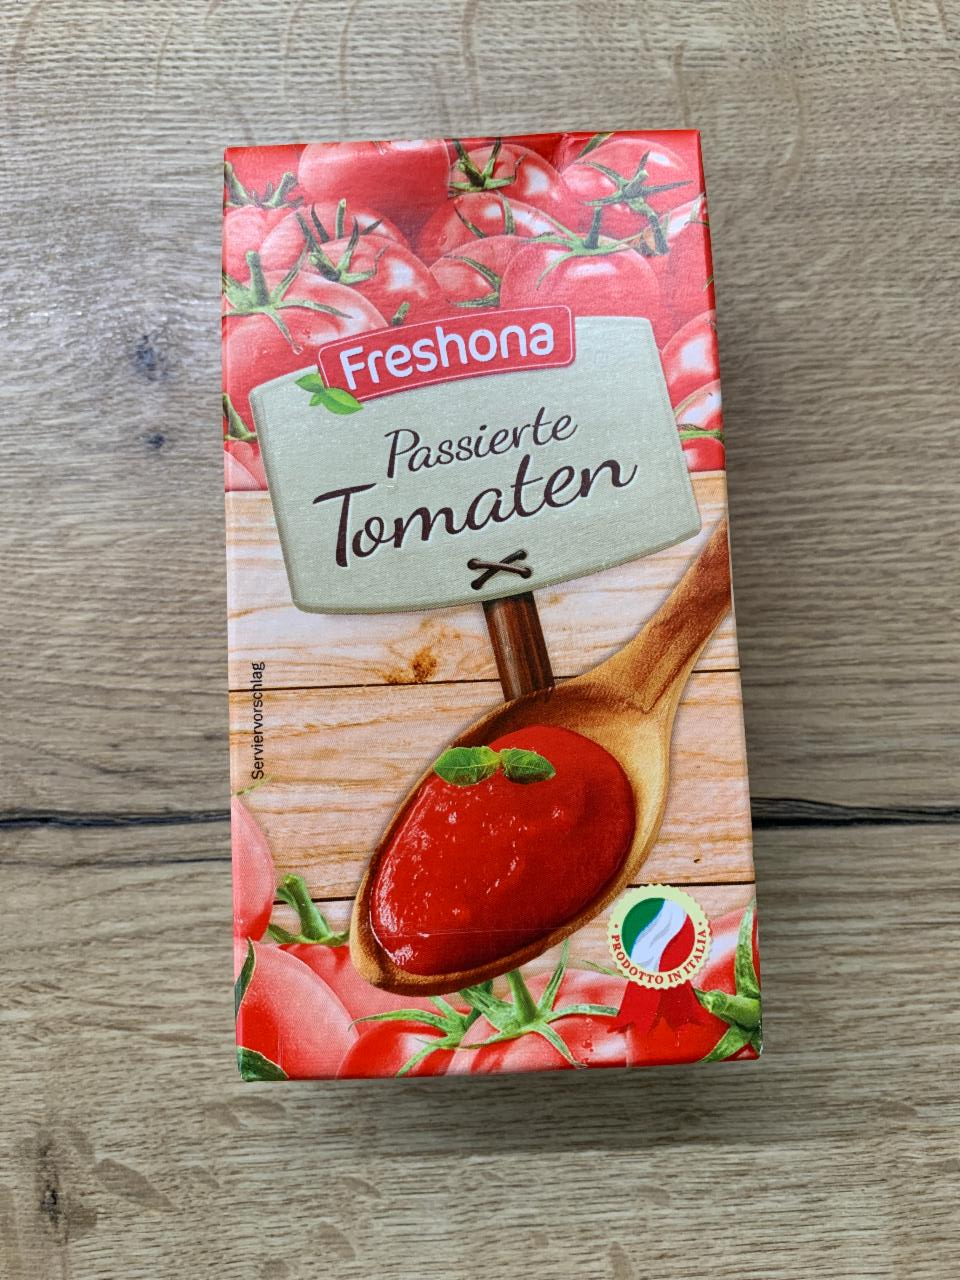 Fotografie - Passierte Tomaten Freshona